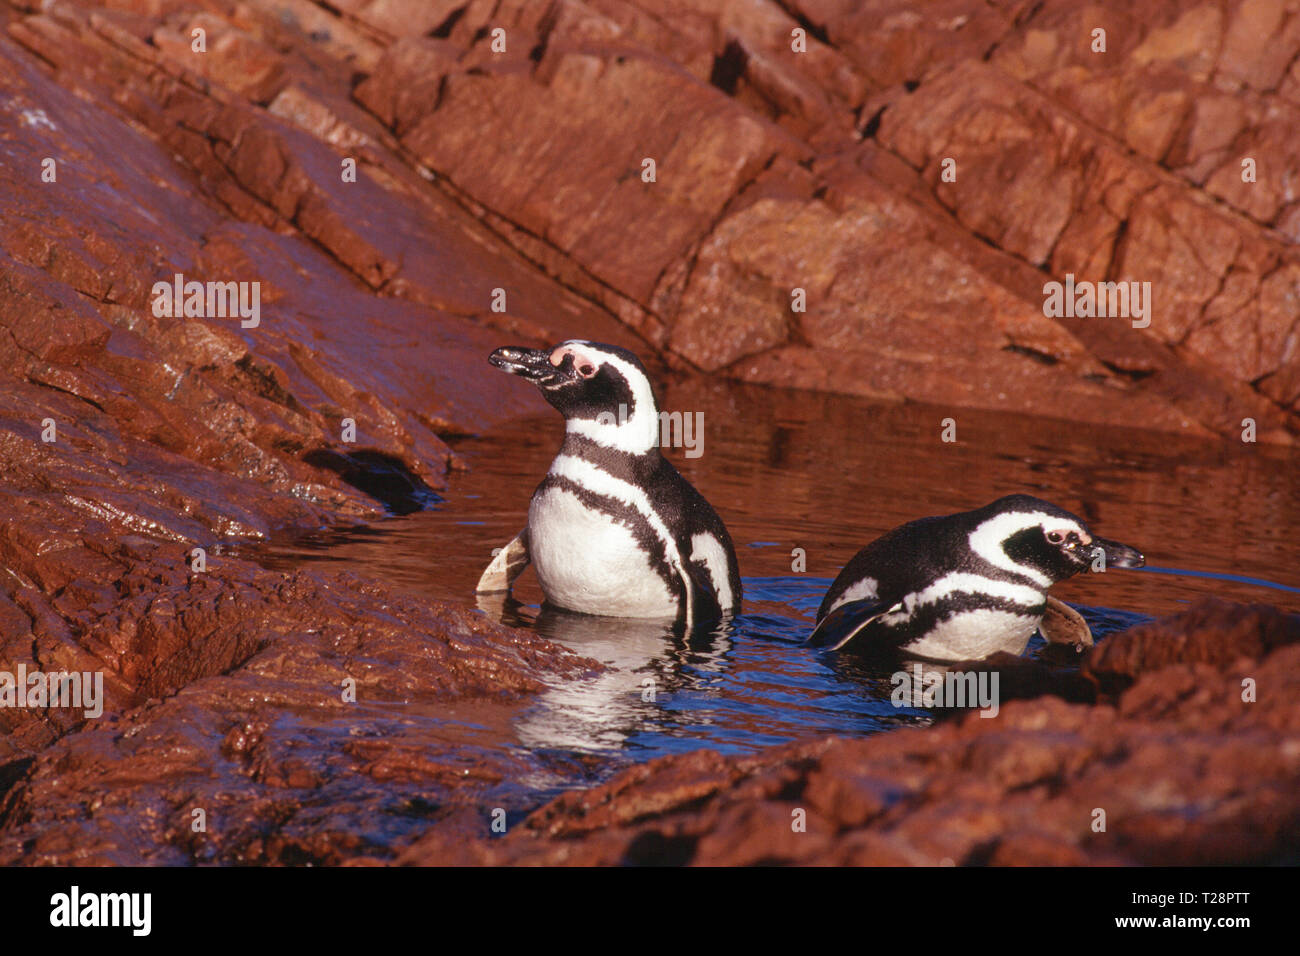 Magellanic penguins (Spheniscus magellanicus), pair in water, Puerto Deseado, Patagonia, Argentina Stock Photo